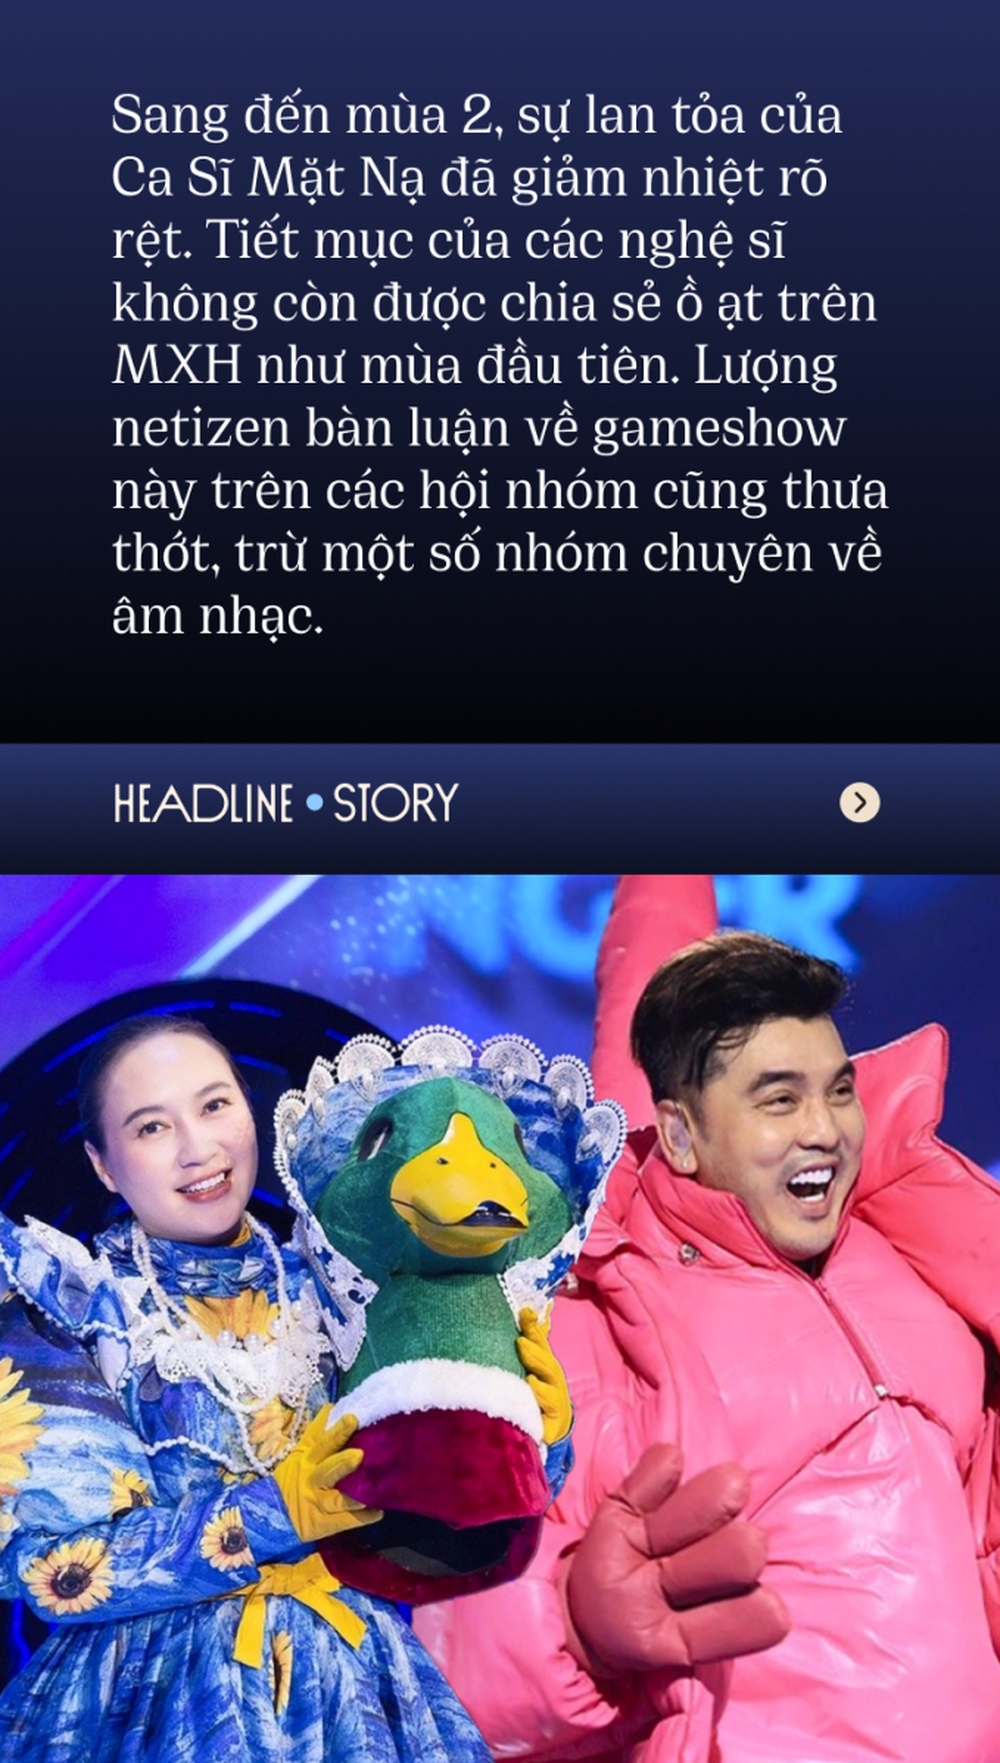 “Lời nguyền mùa đầu tiên” của gameshow Việt: Sức hút suy giảm dù nỗ lực đổi mới, vì đâu nên nỗi? - Ảnh 4.